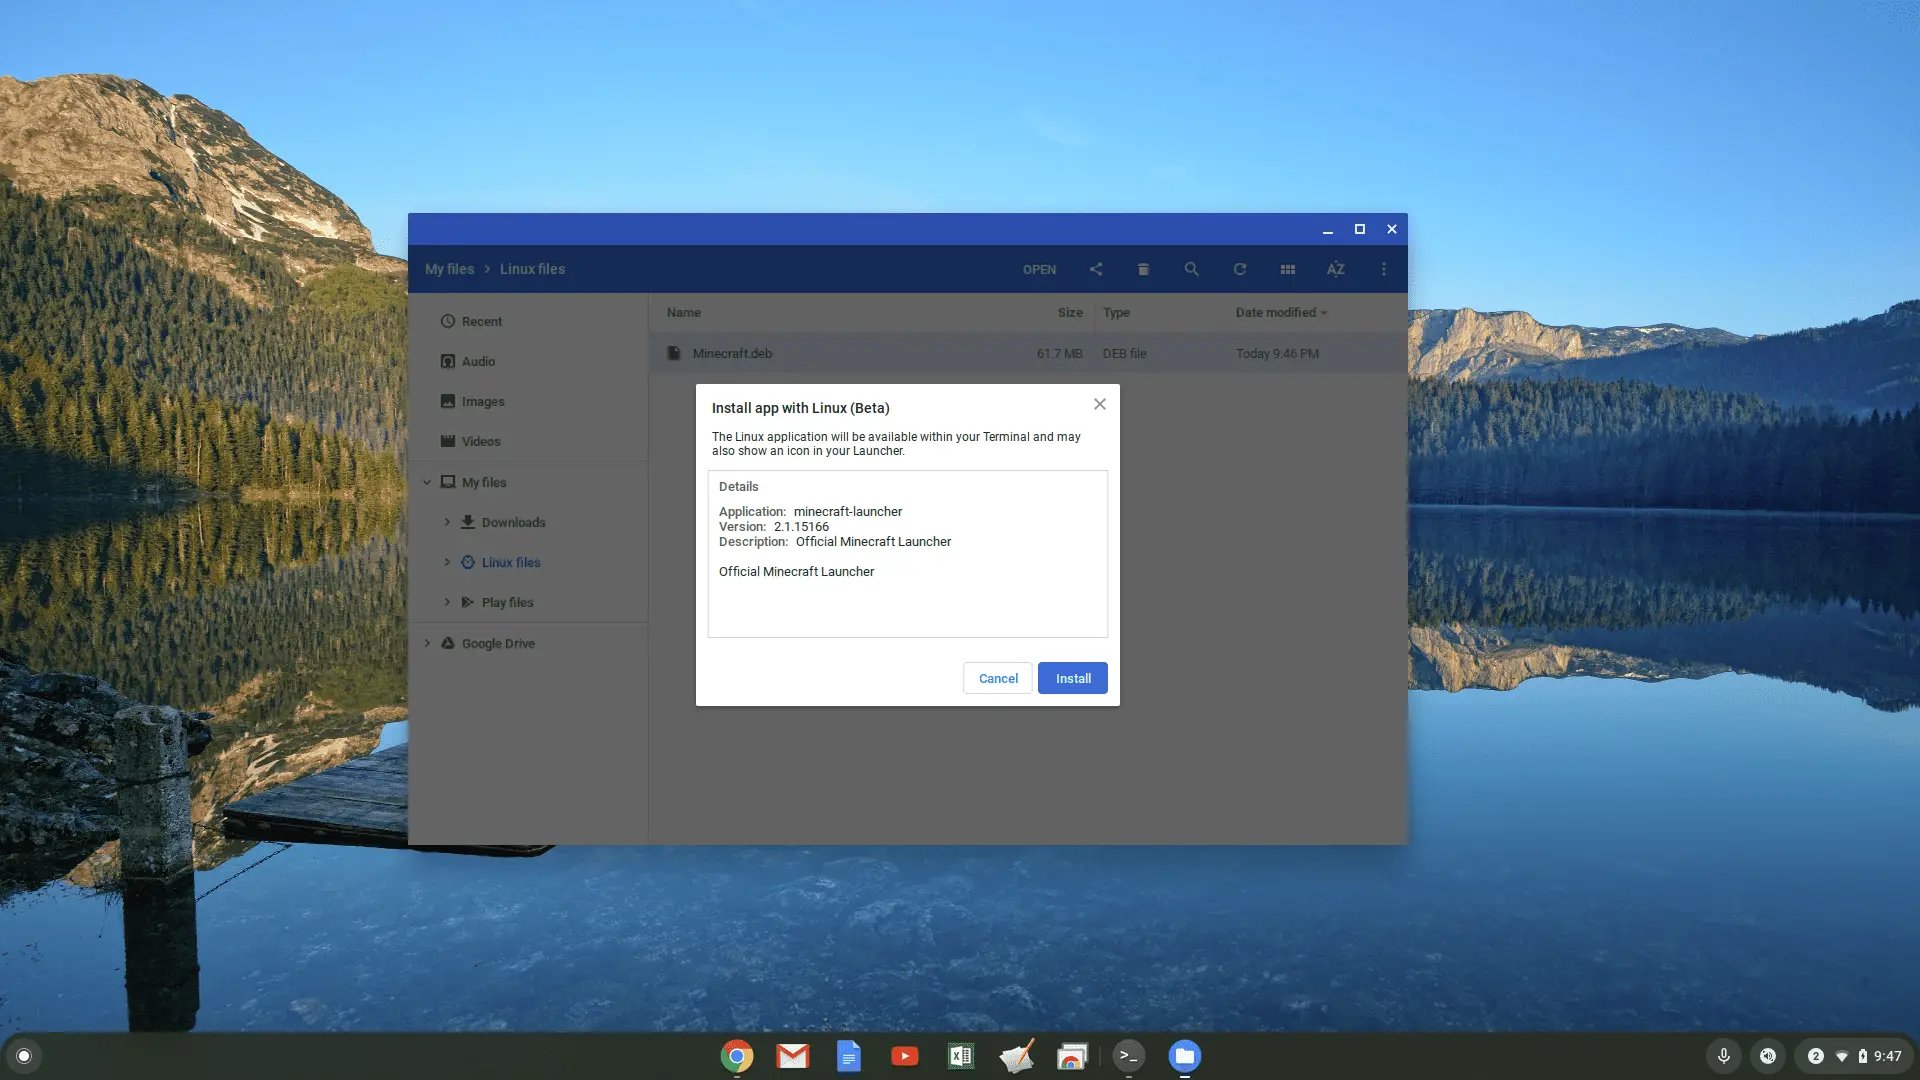 Captura de tela da instalação do Linux (Beta) no Chromebook